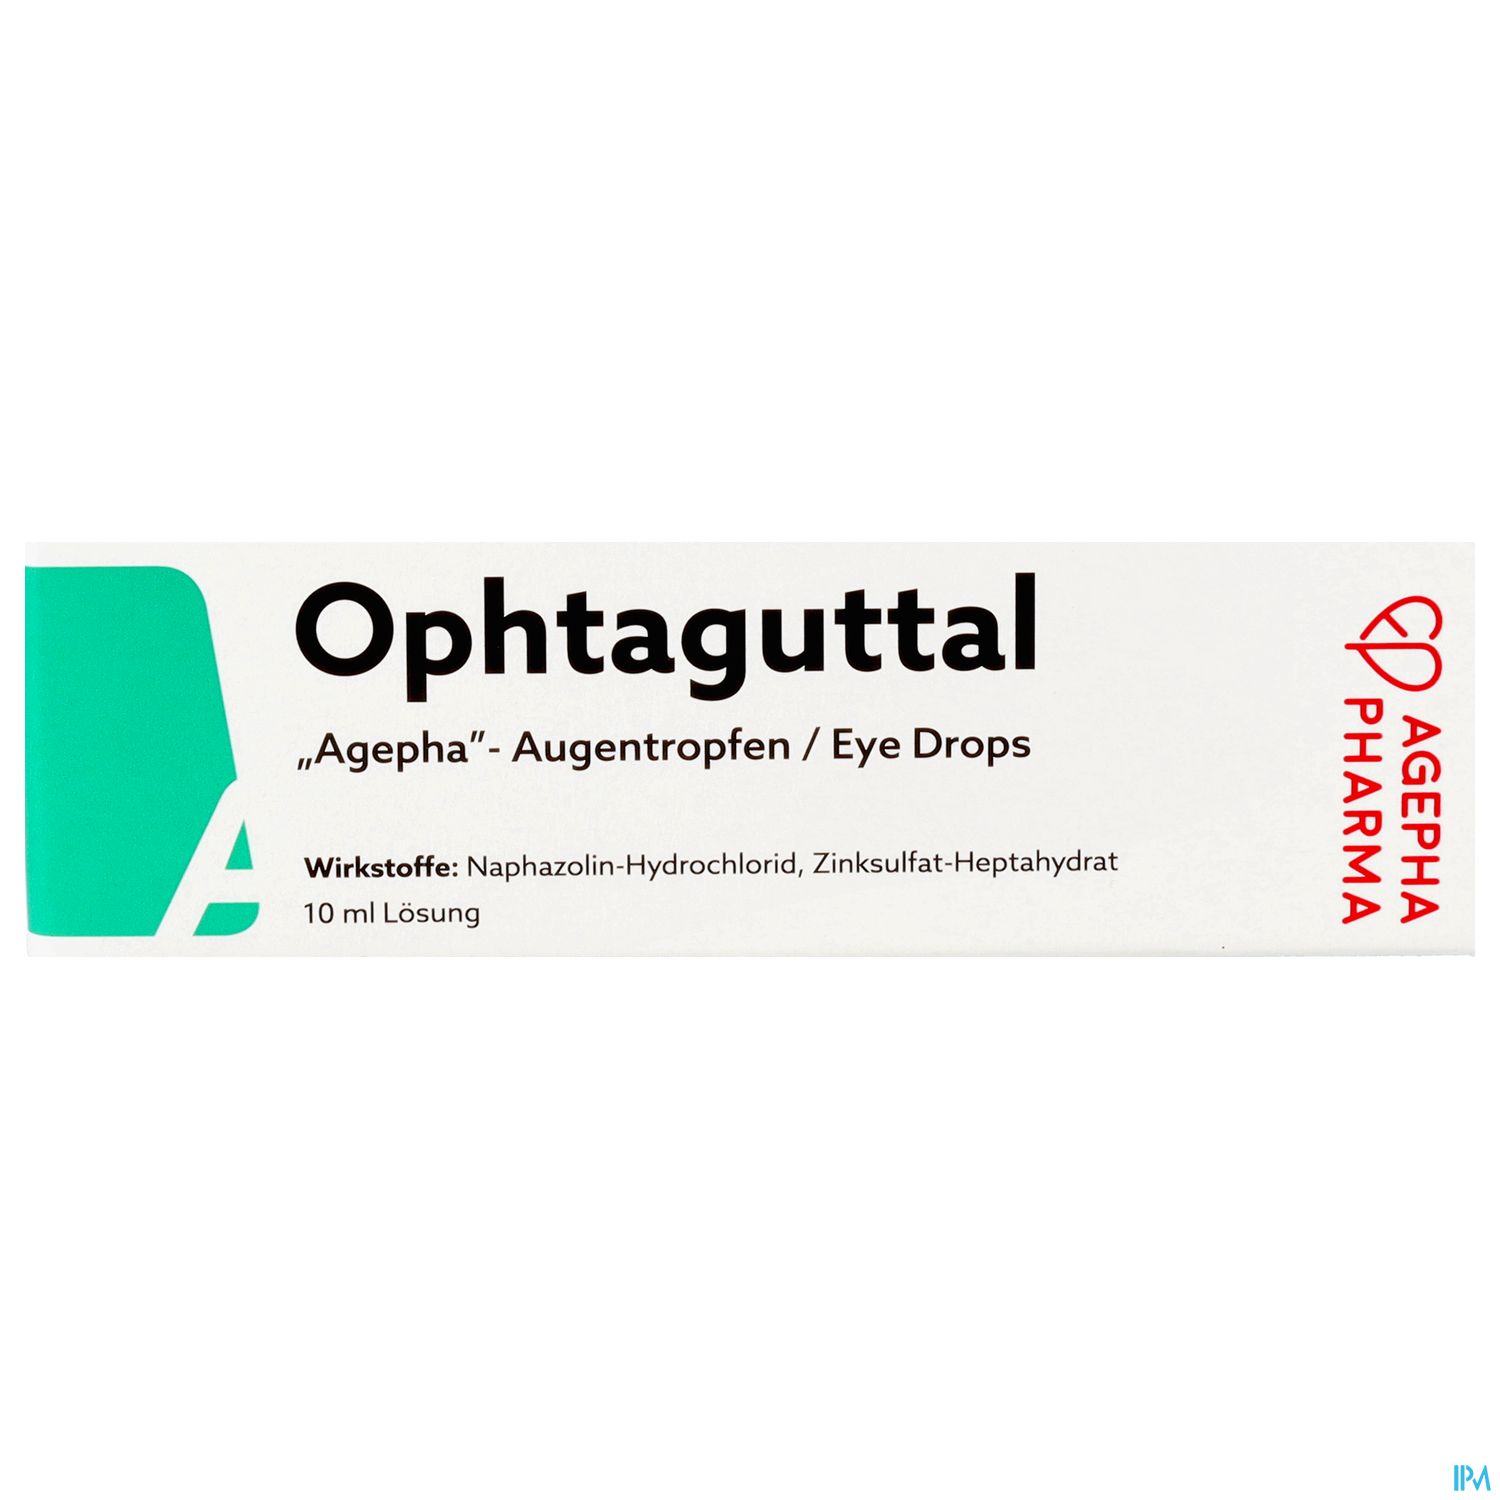 Ophthaguttal "Agepha" - Augentropfen